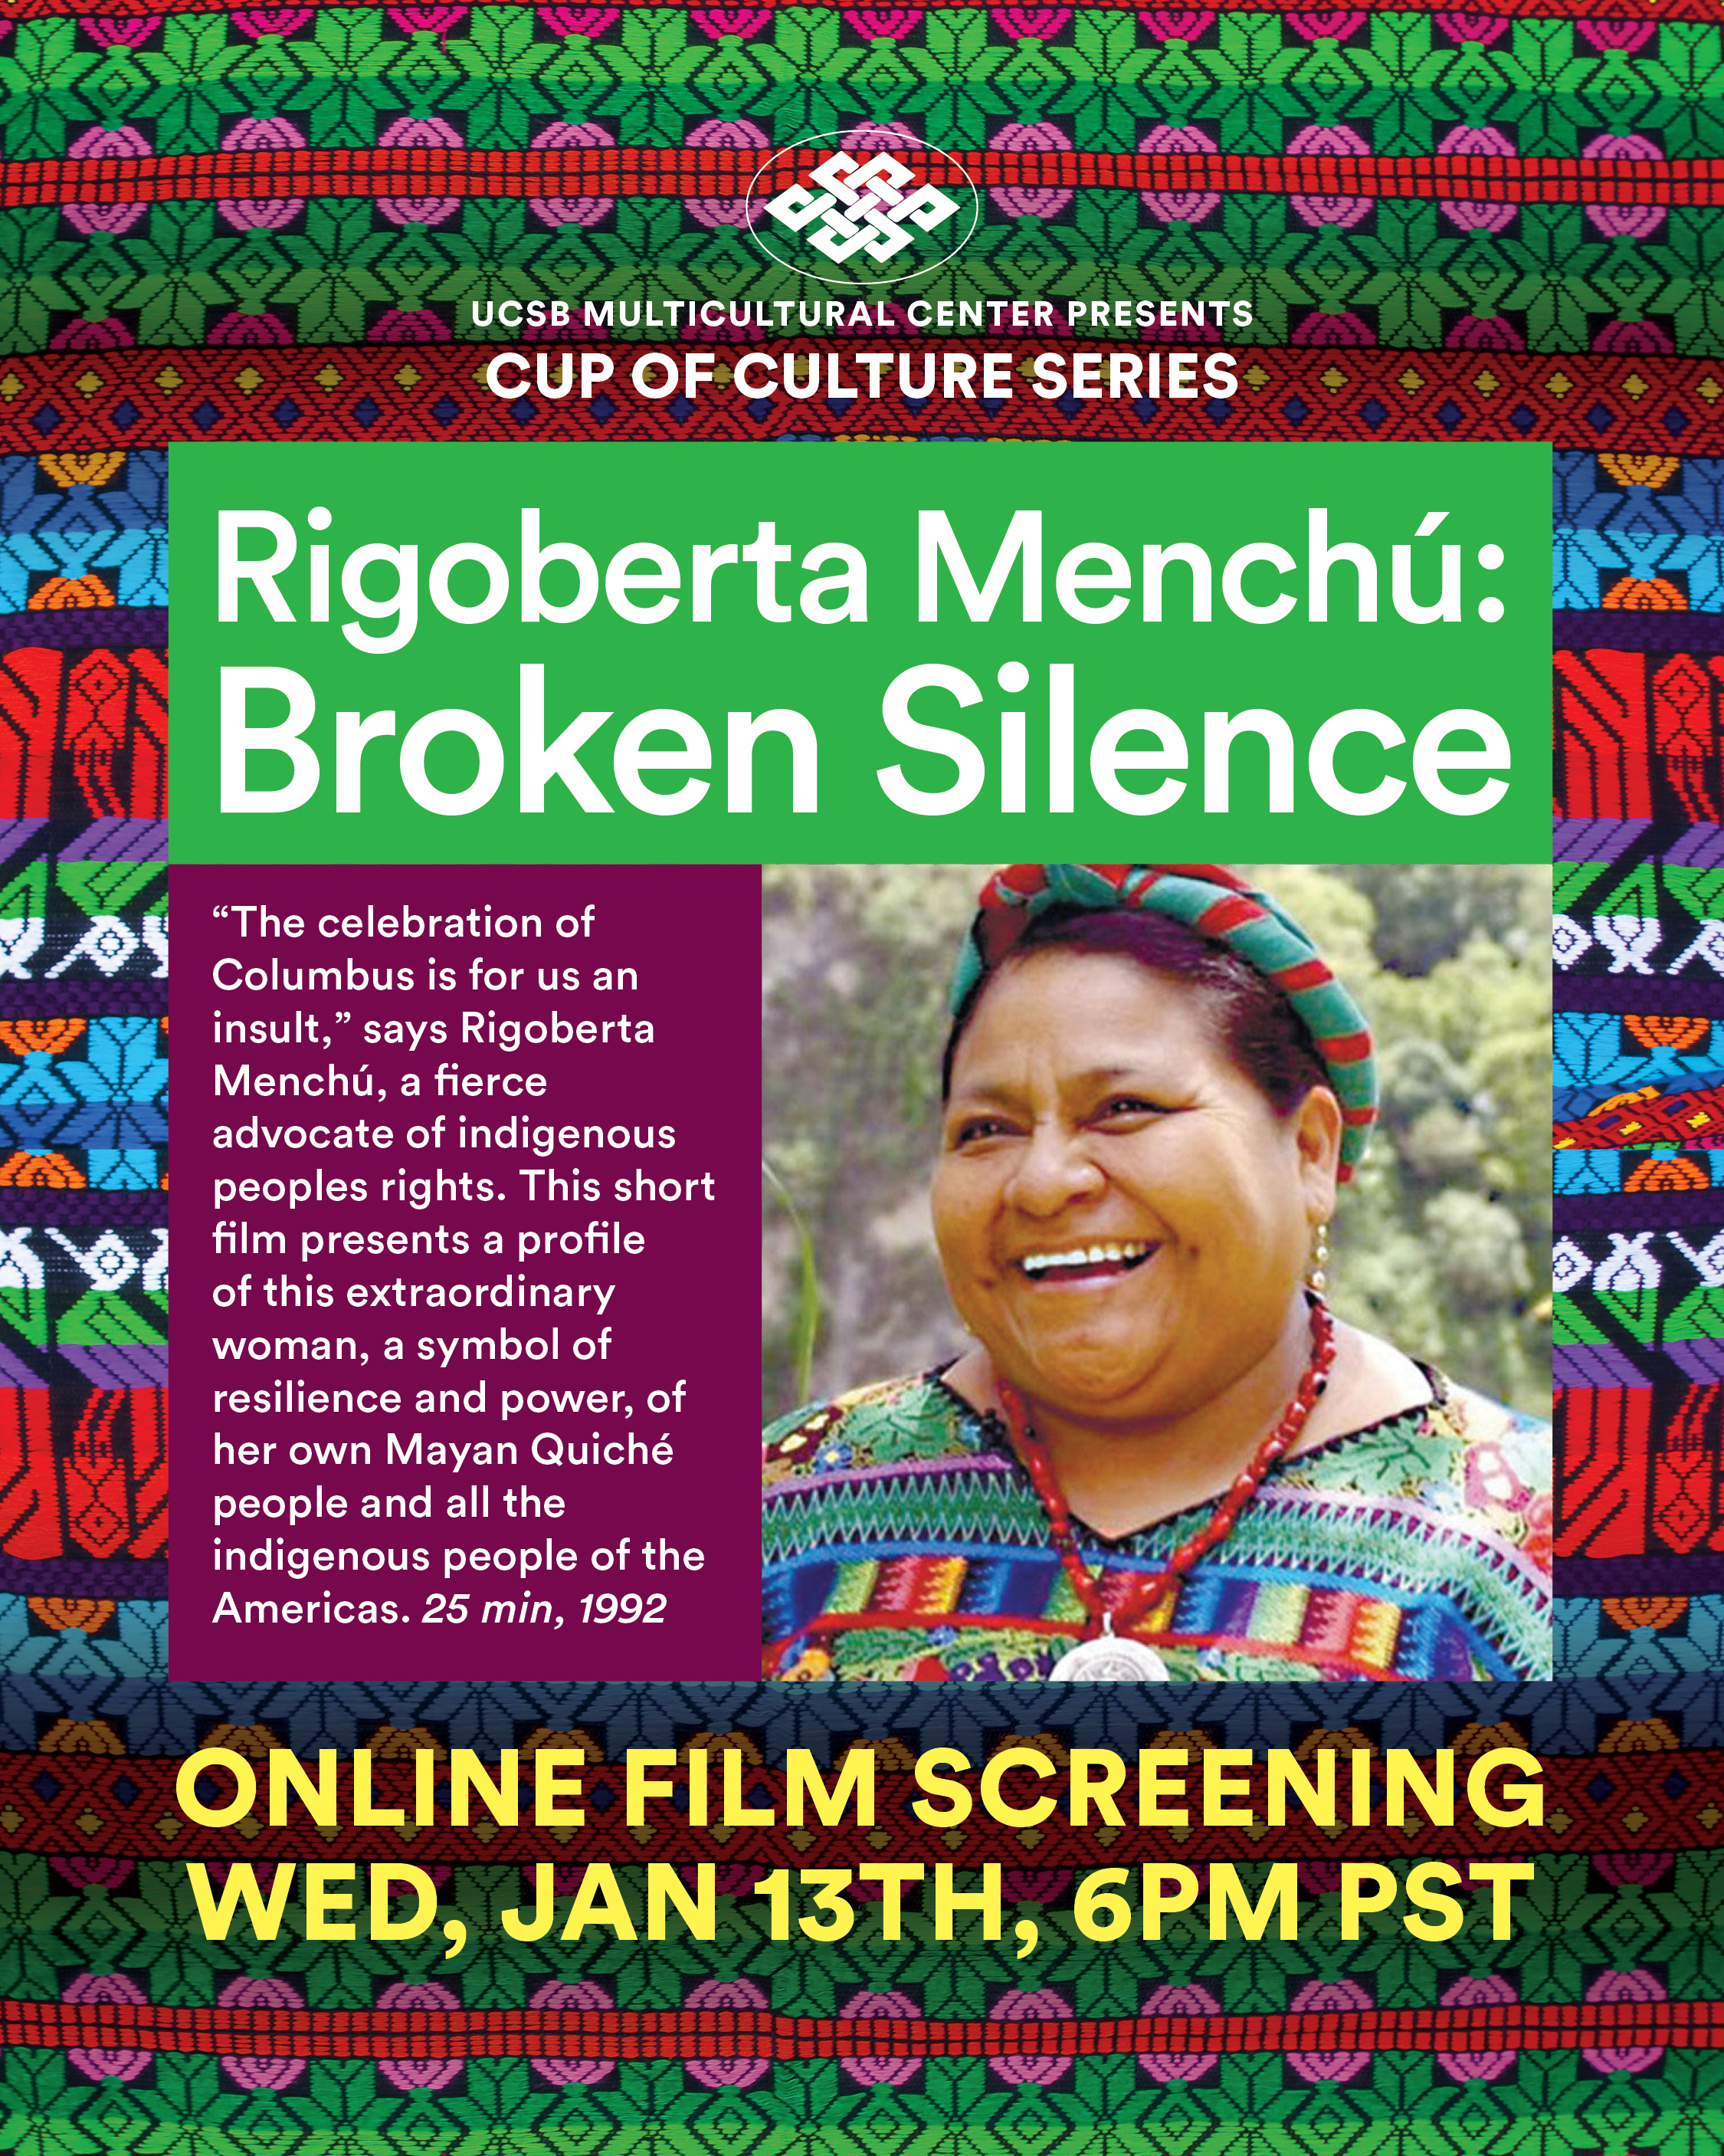 Rigoberta Menchú: Broken Silence